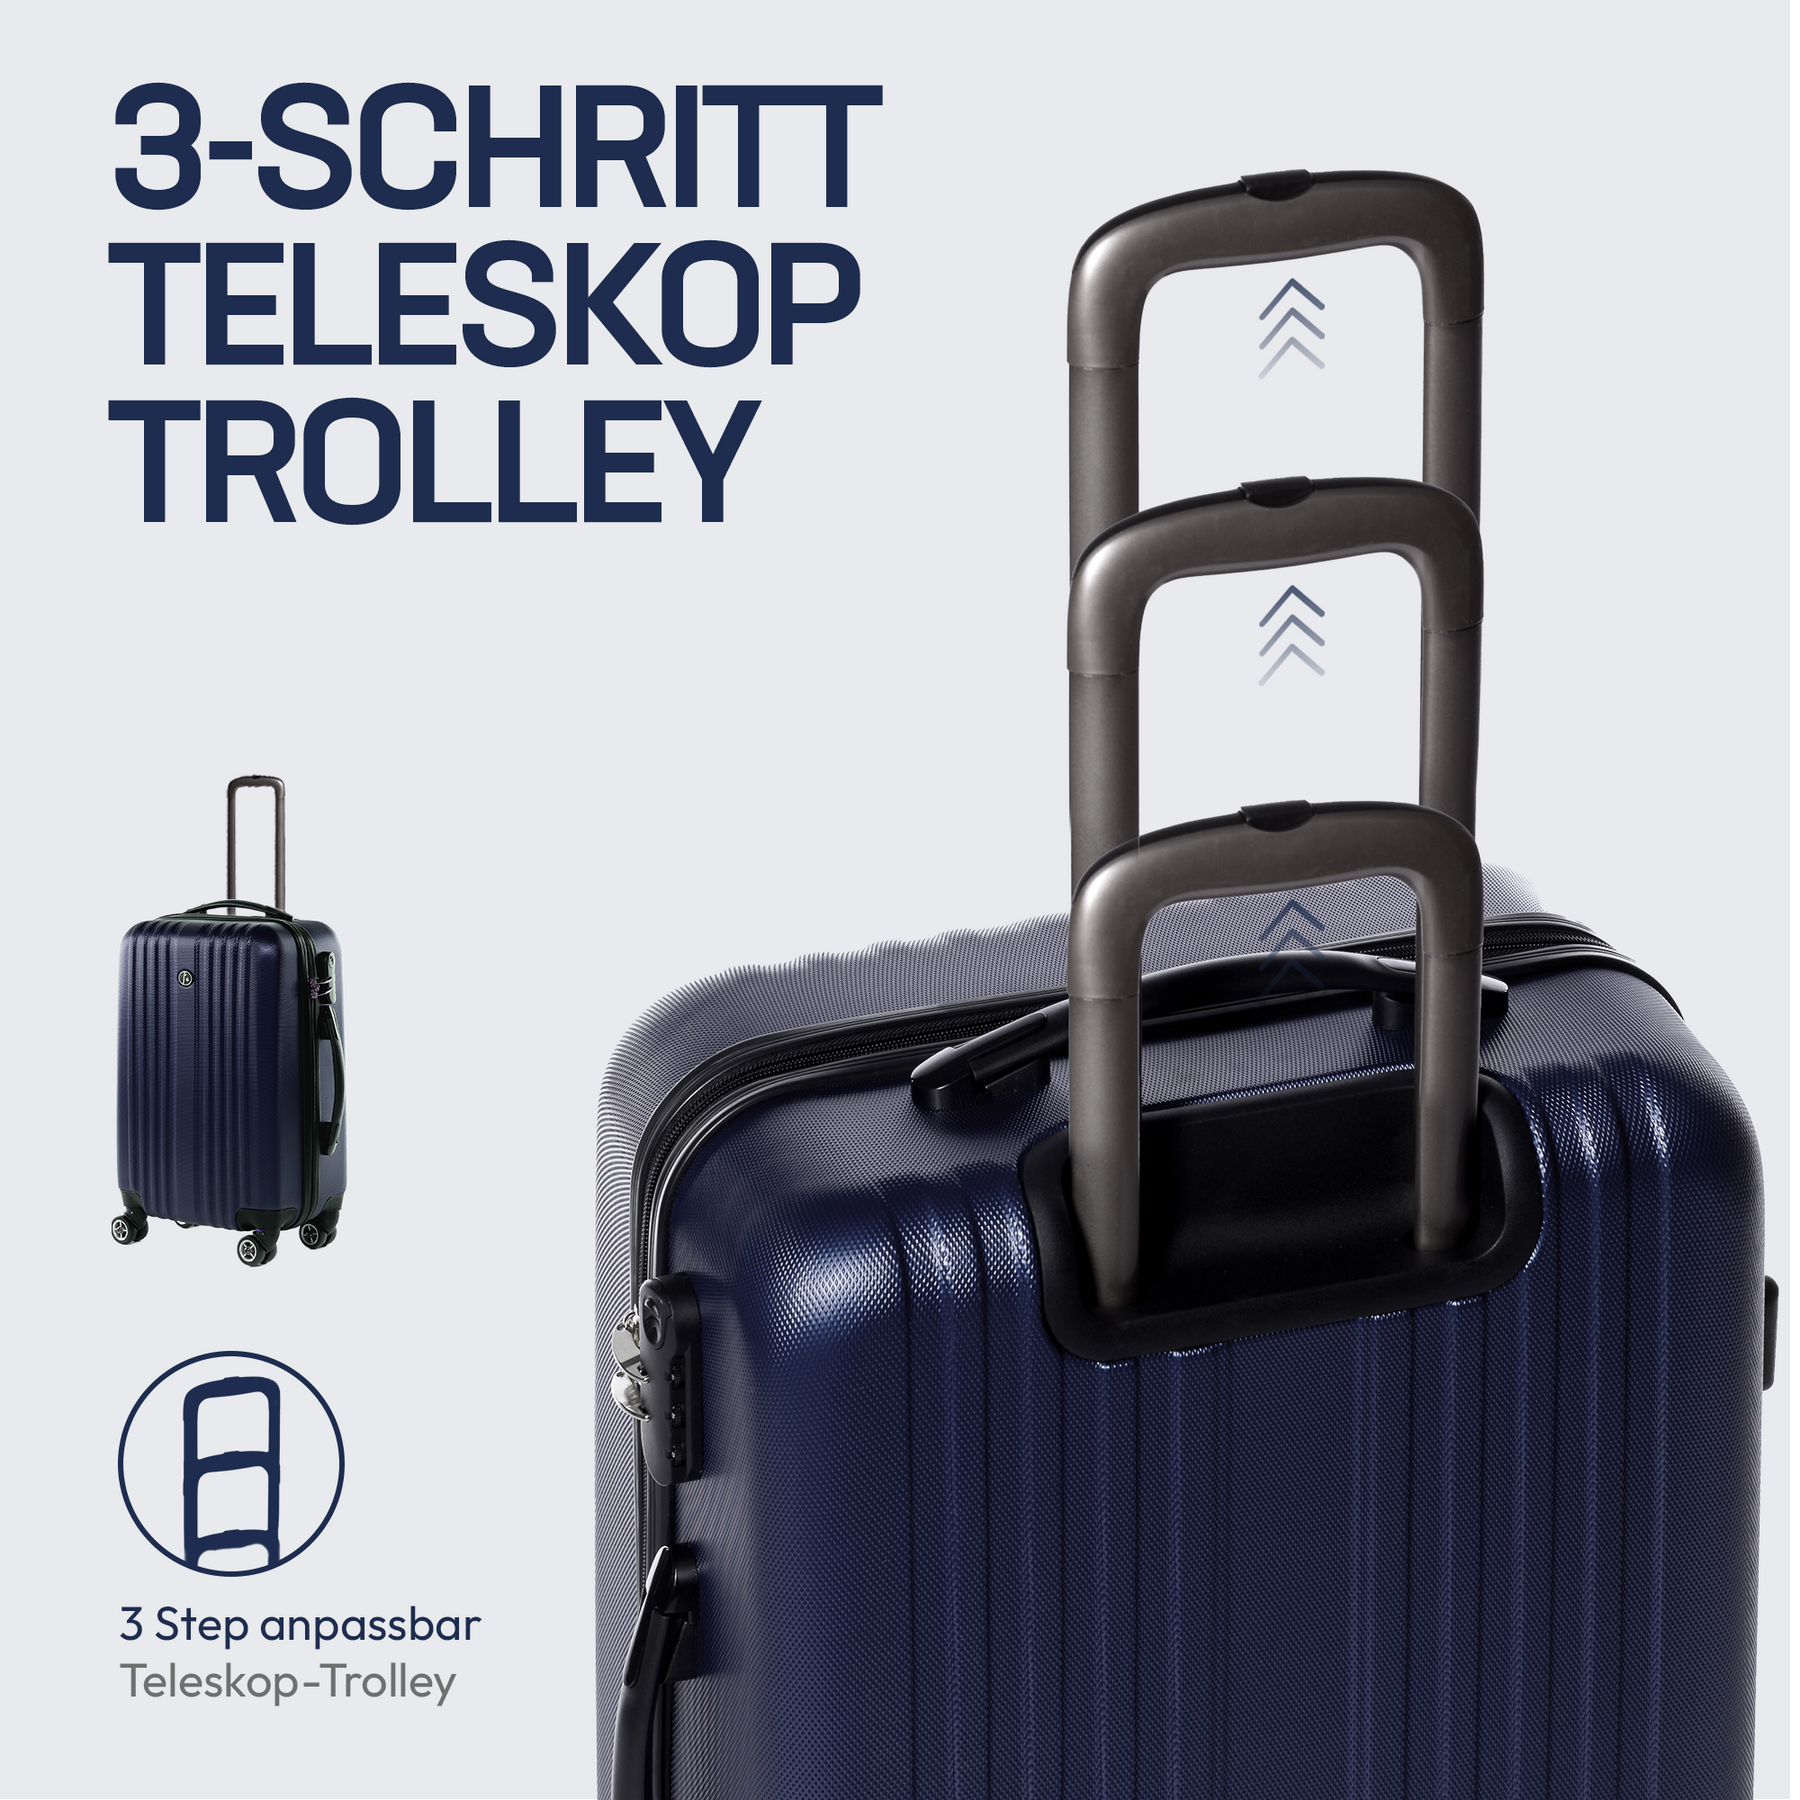 Set de valises pas cher : Ensemble de 3 valises rigides trolley 4